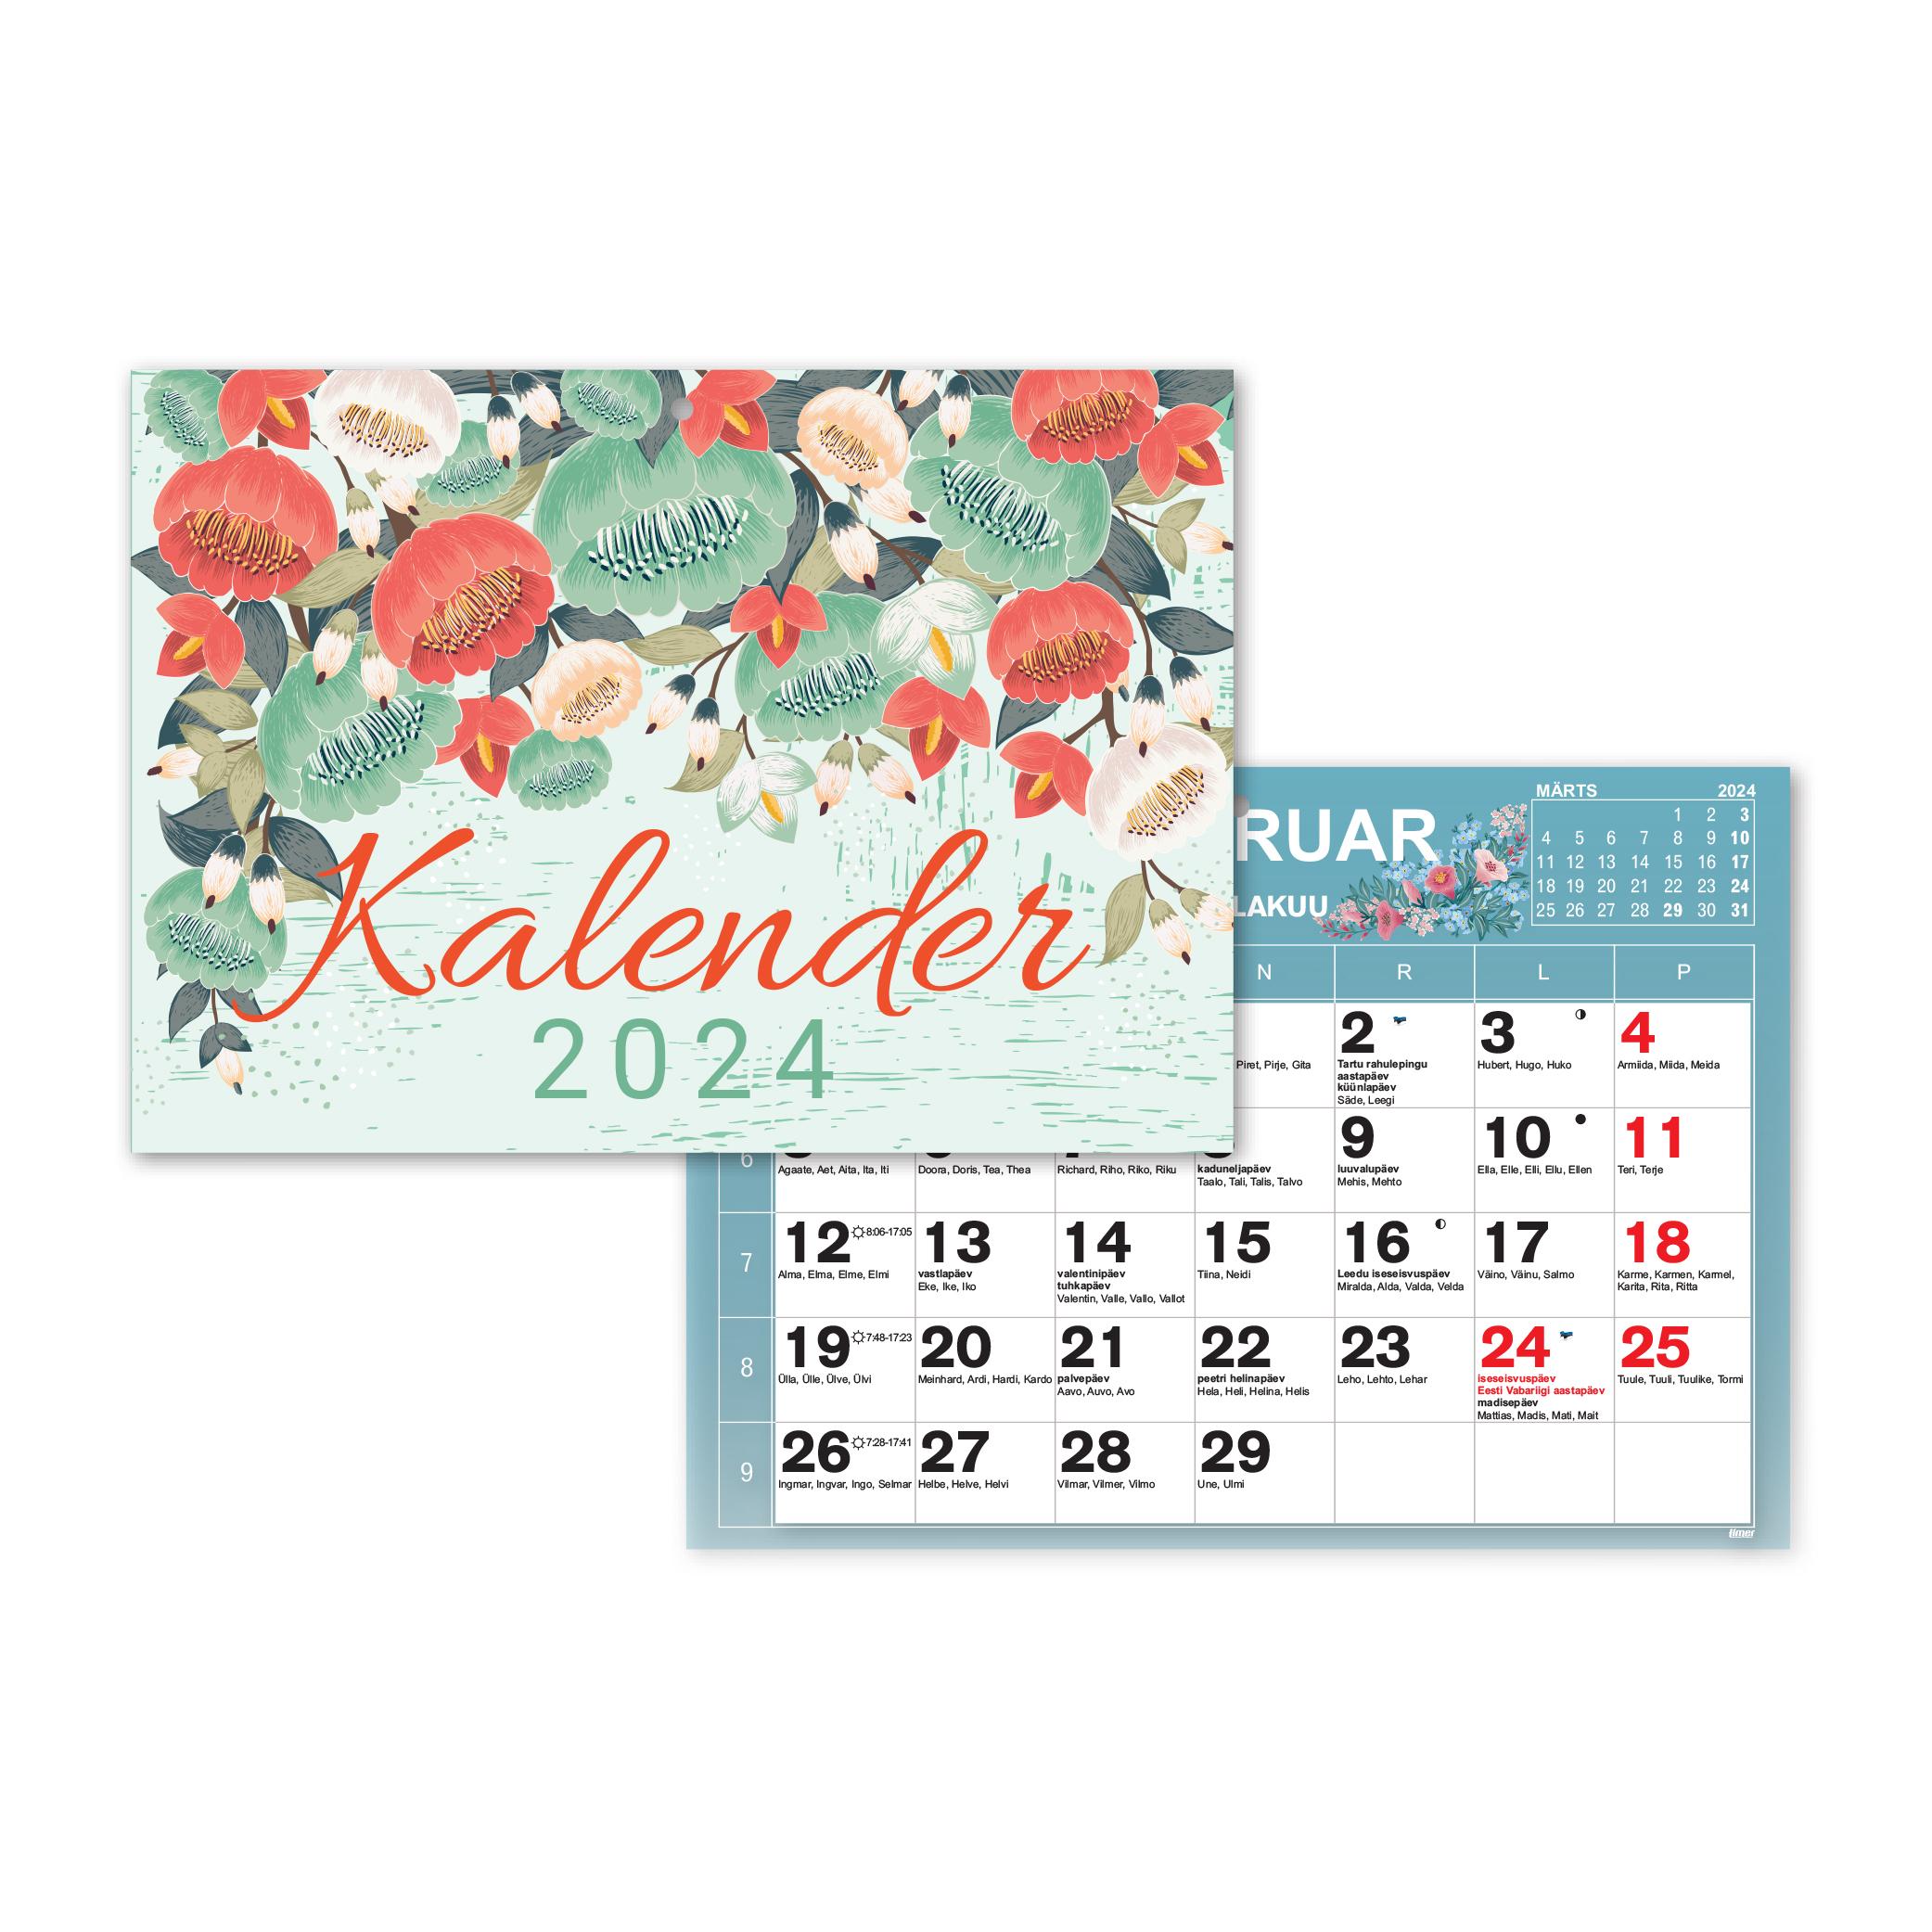 Kalender color b5 2024